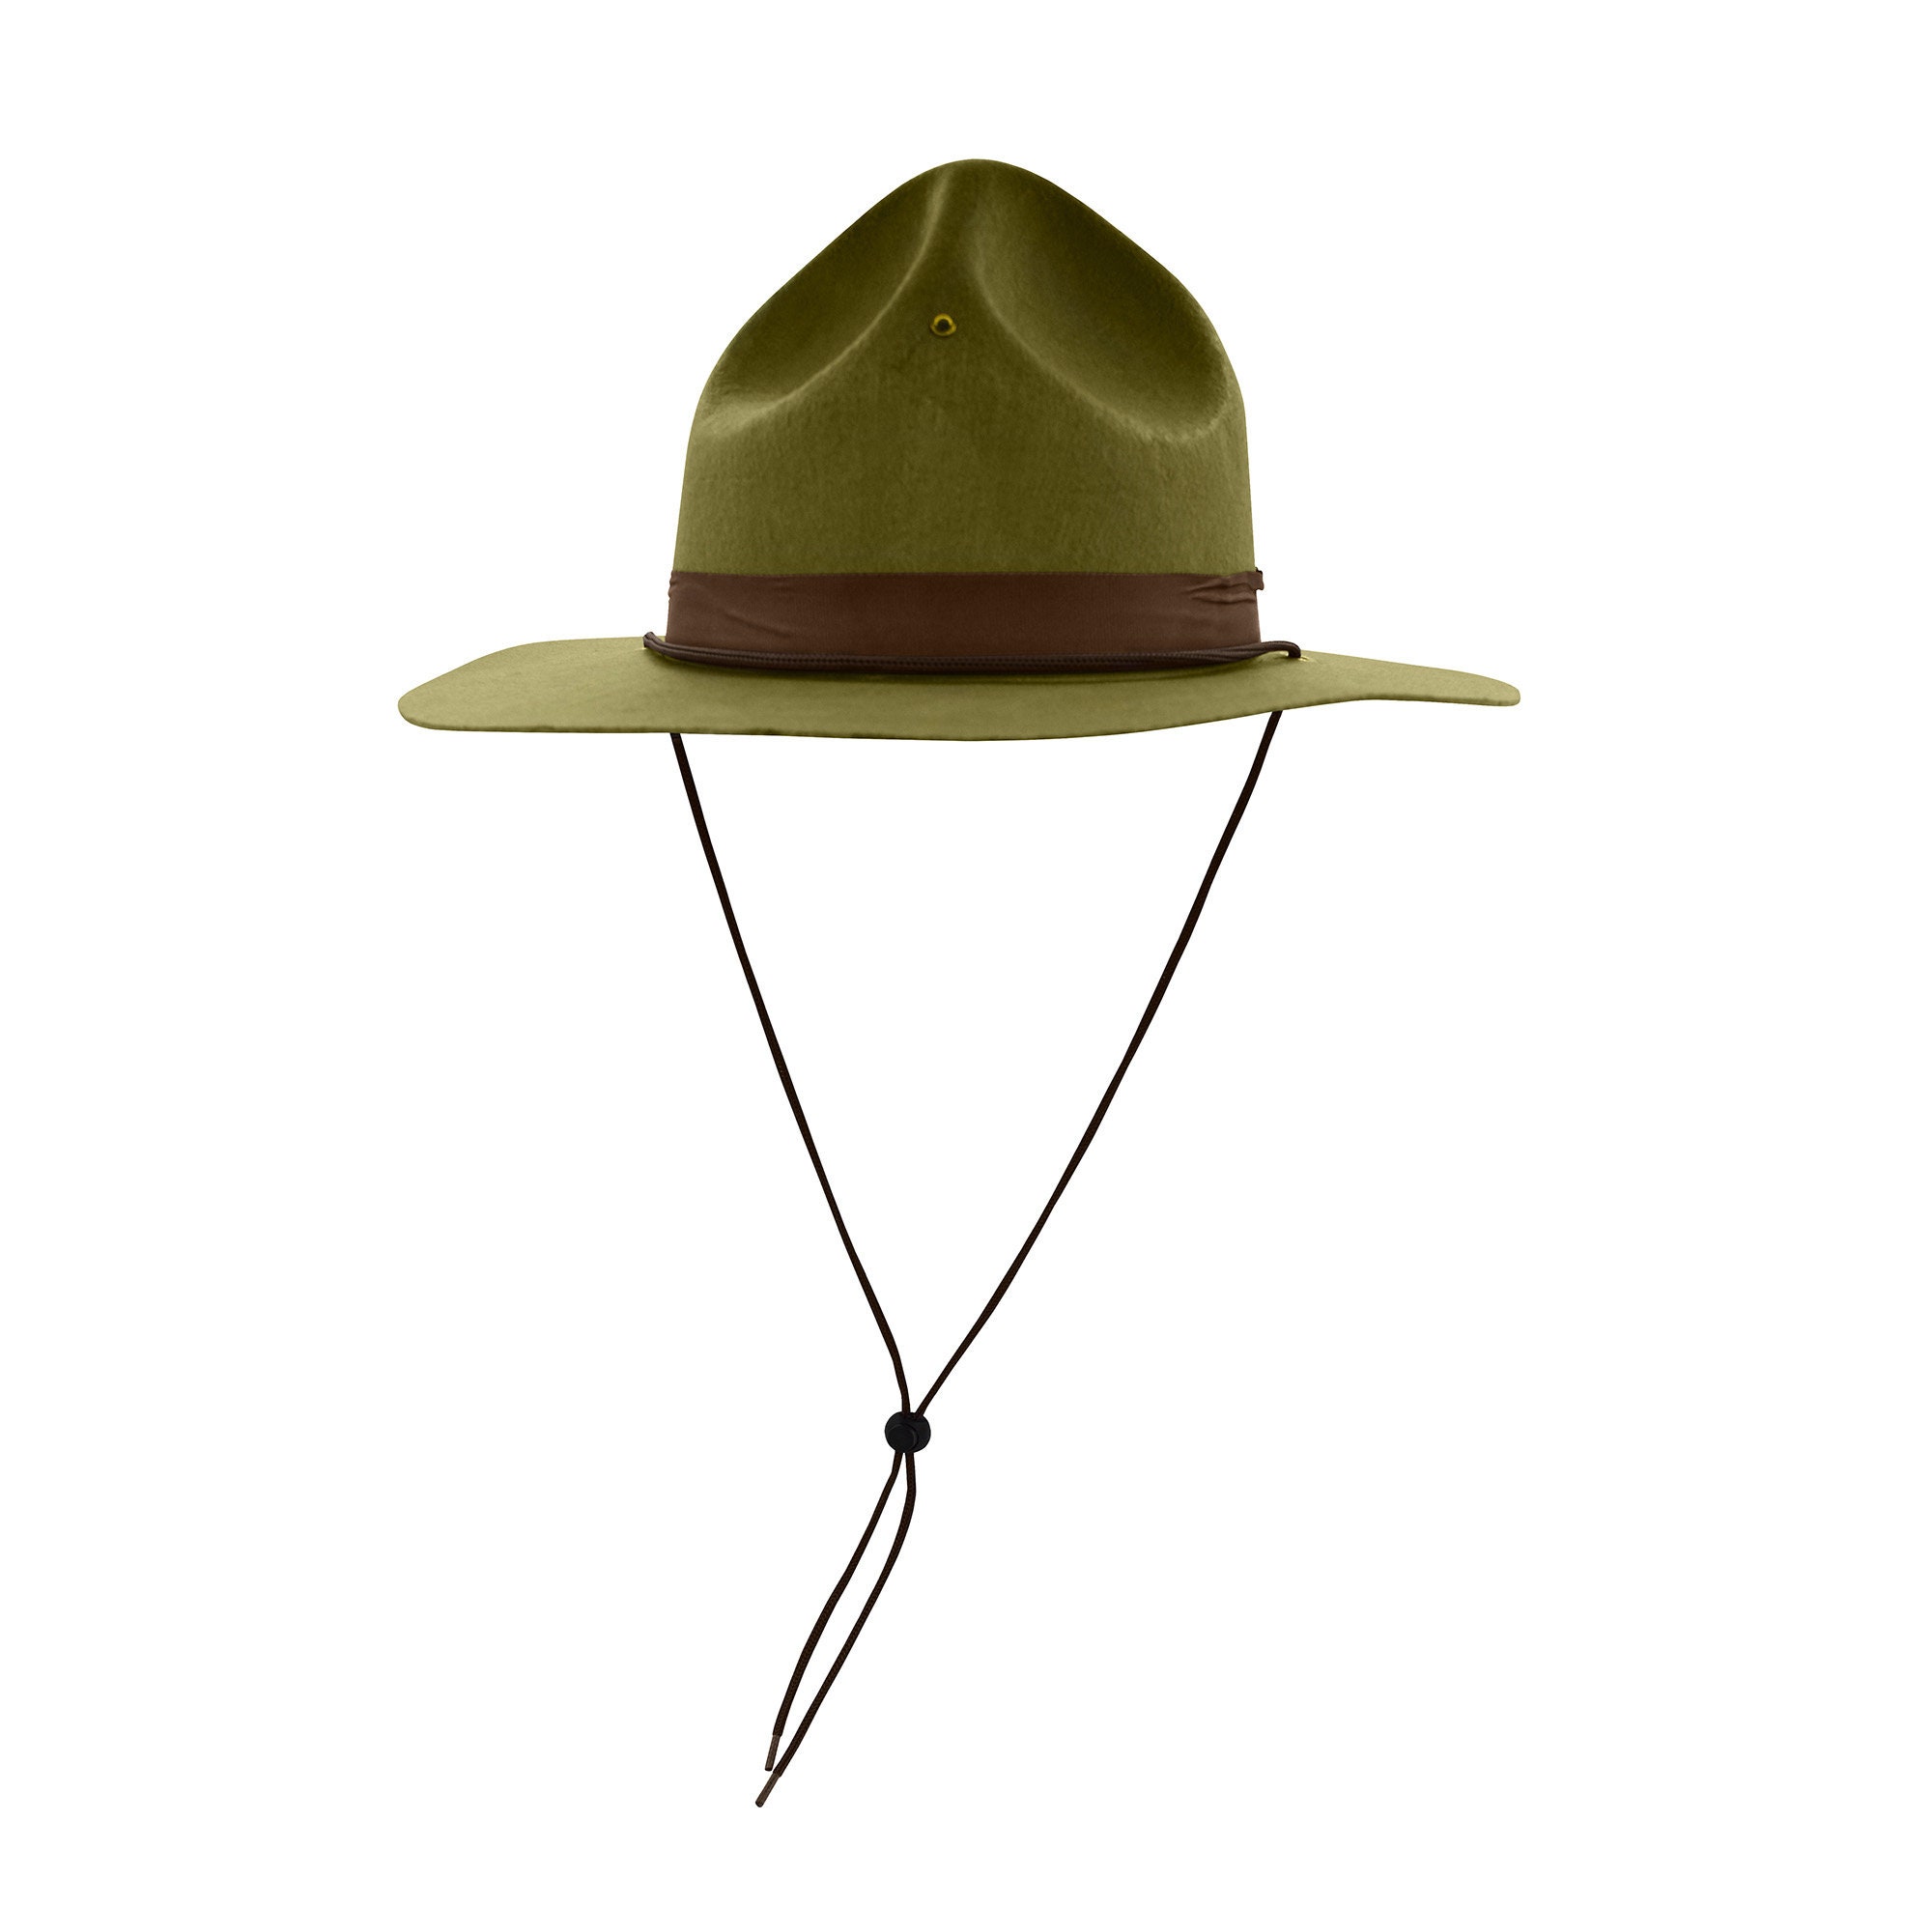 Las mejores ofertas en Sombreros y gorras de la policía de colección